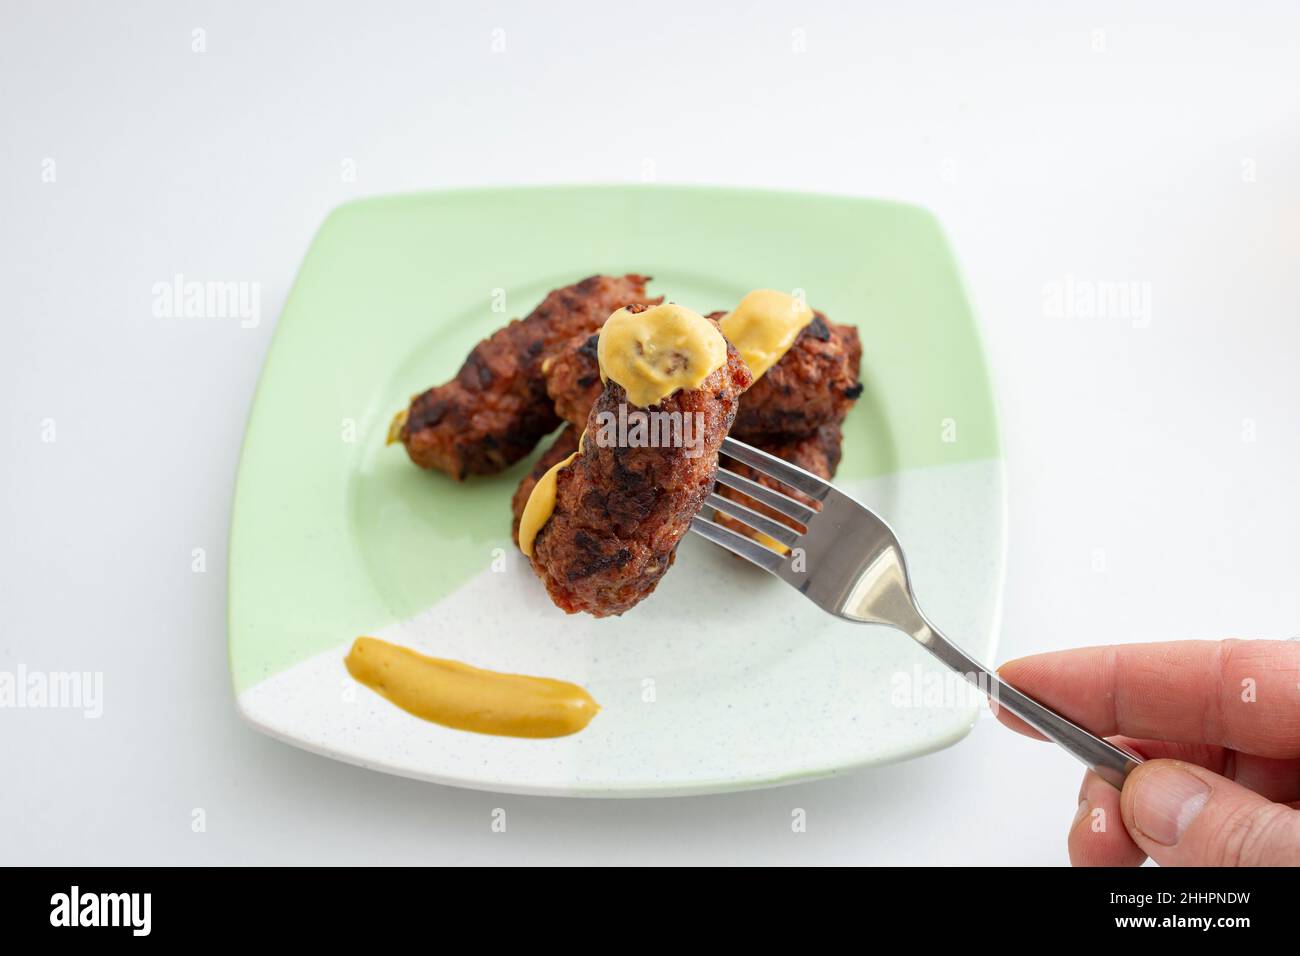 Mici o mitititititei (cibo tradizionale rumeno) con senape su un piatto di ceramica, su sfondo bianco. Tenere a mano una forcella in acciaio inox Foto Stock